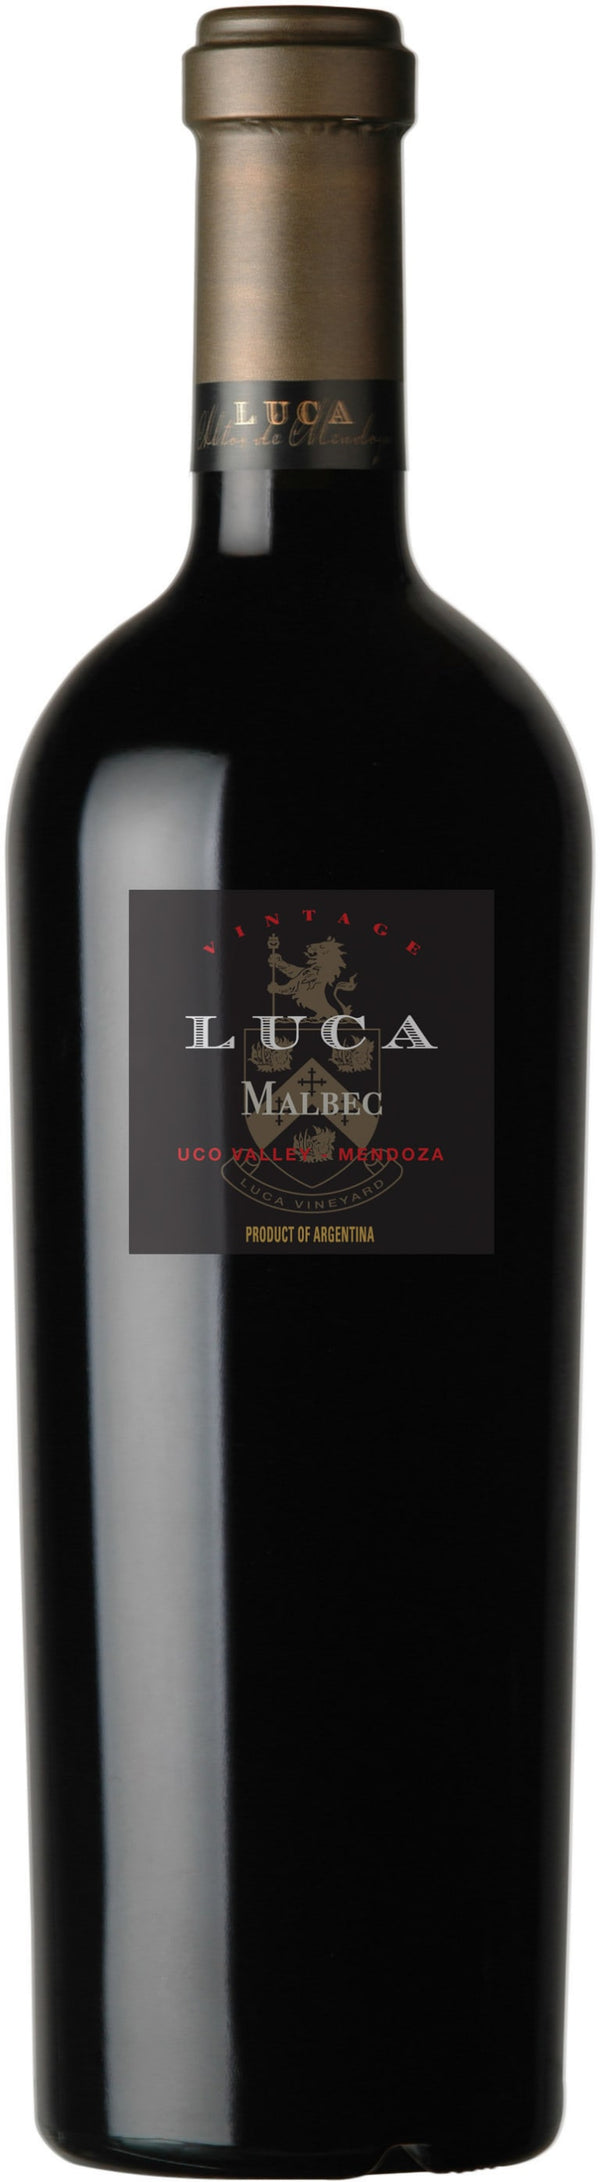 2018 Luca Malbec Old Vine, Mendoza